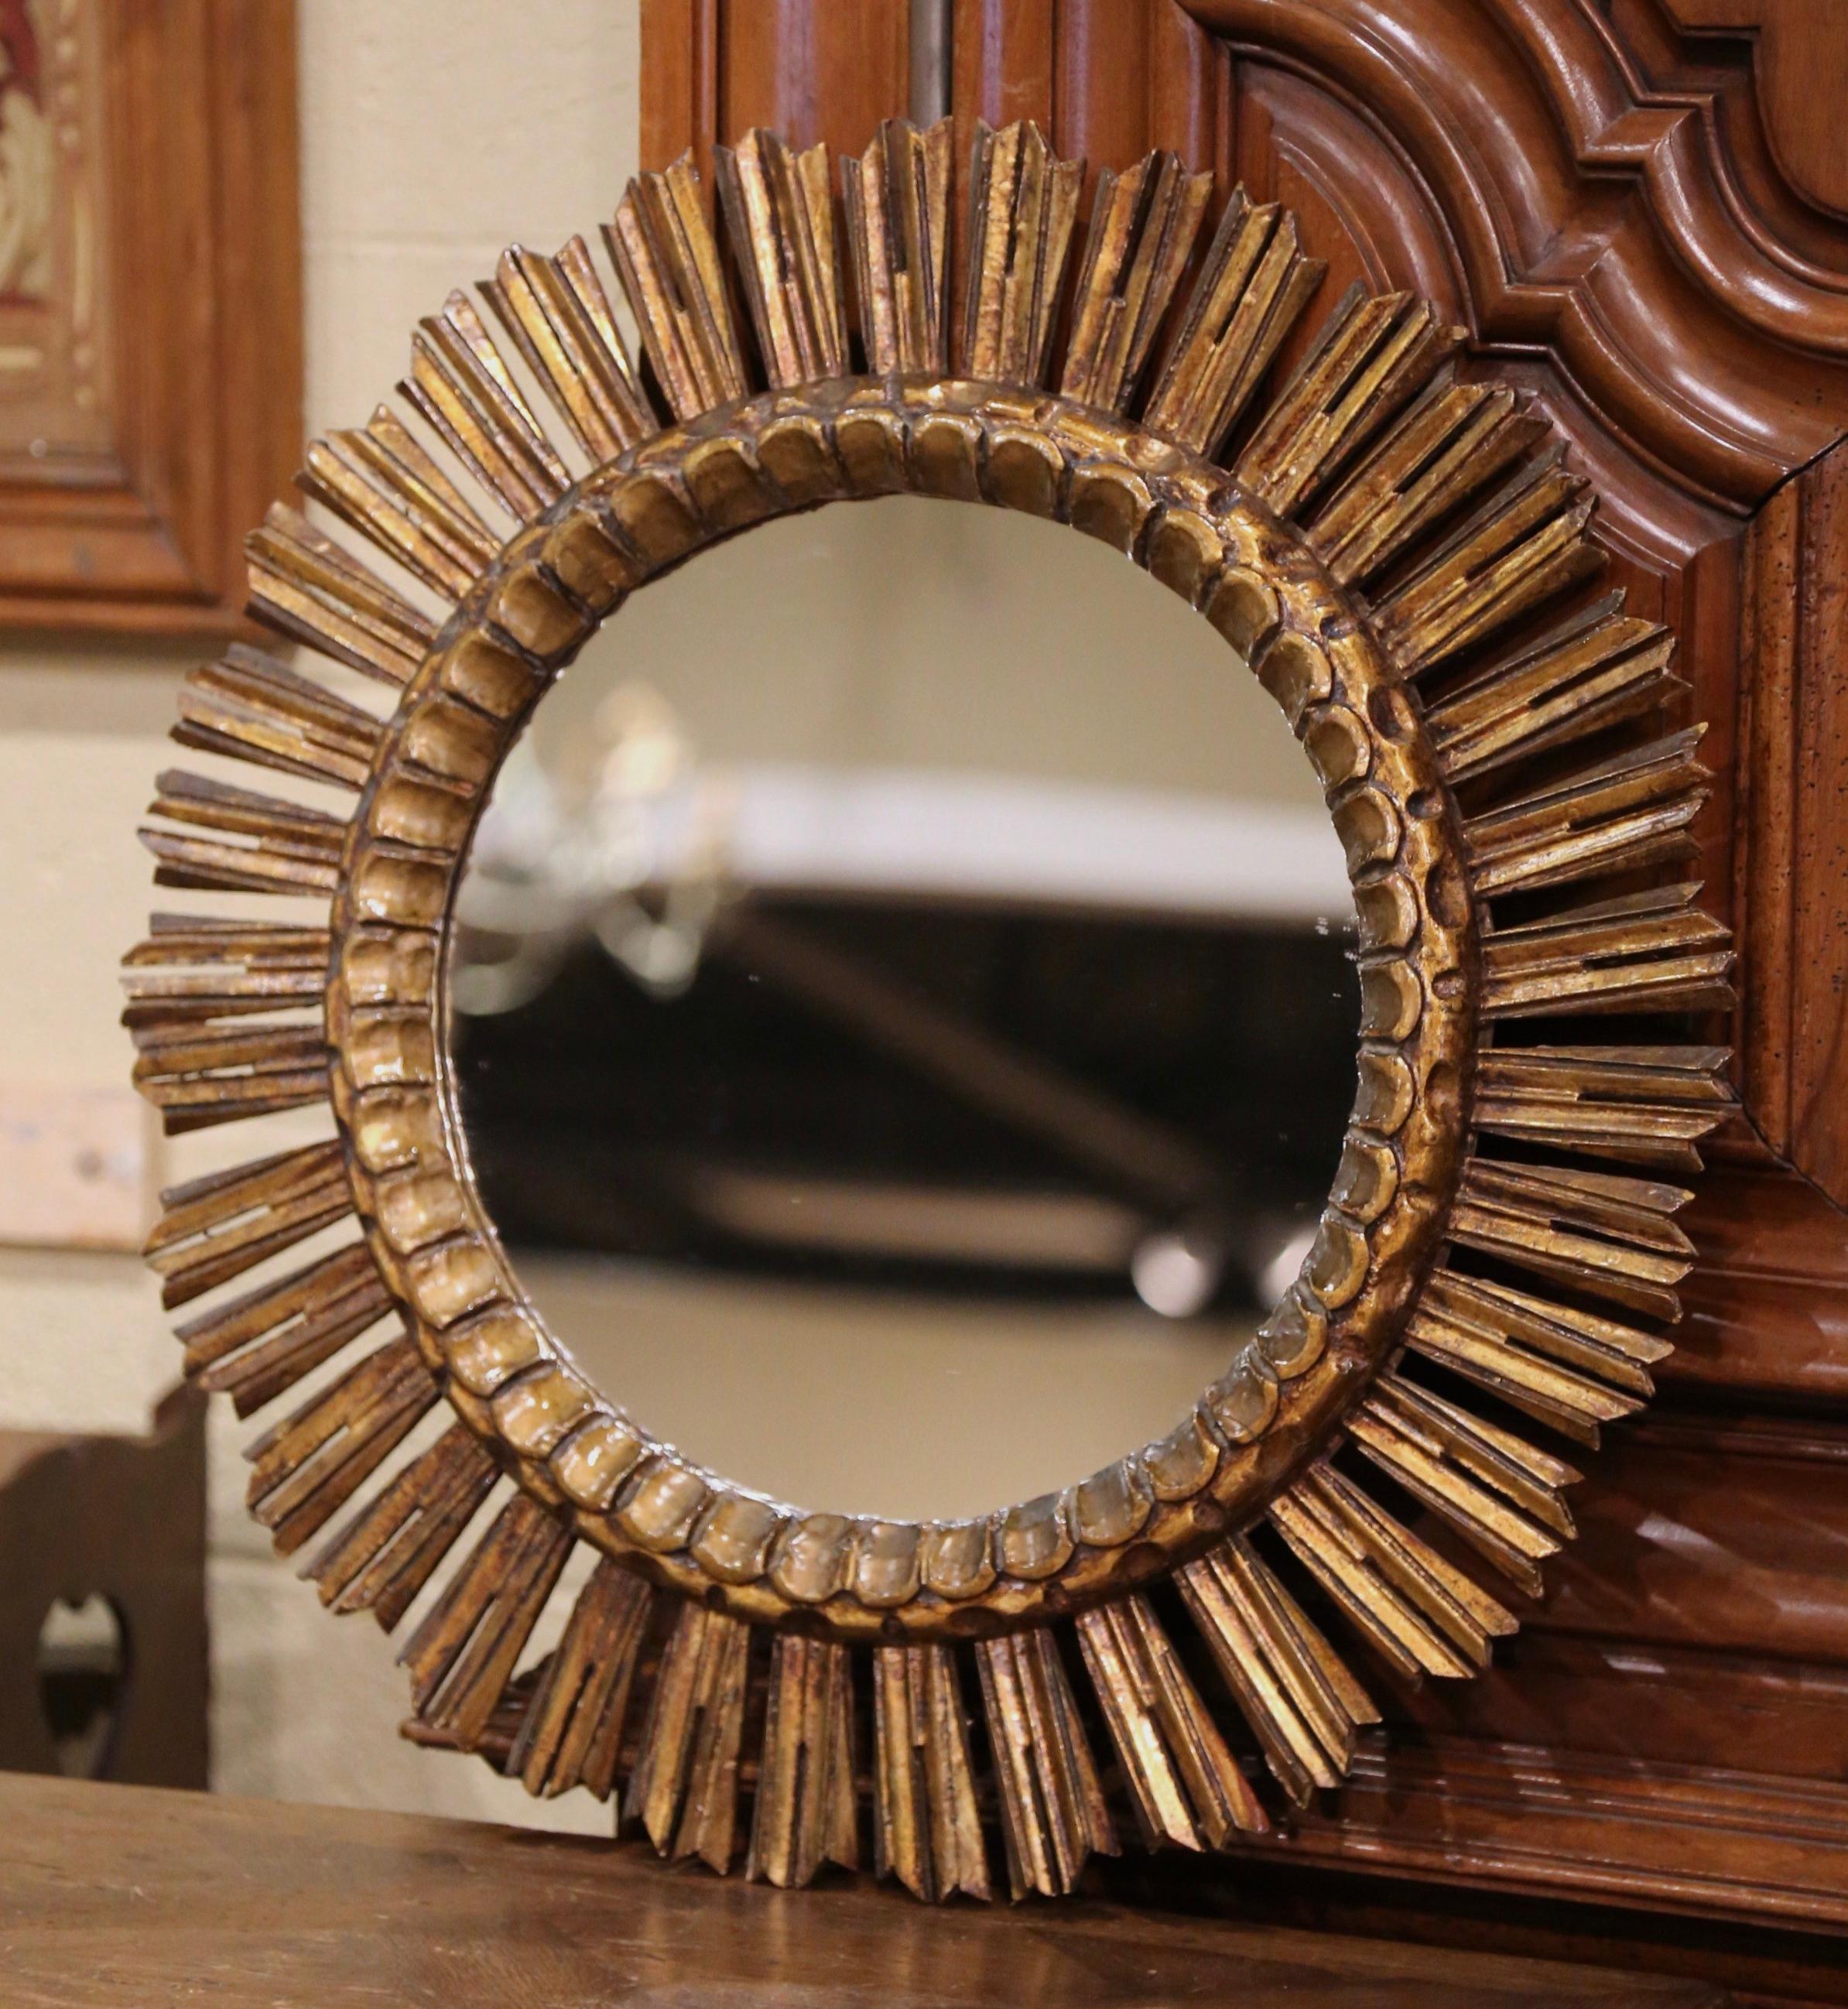 Mit diesem großen Sonnenspiegel im Vintage-Stil bringen Sie zusätzliches Licht in jeden Raum. Der runde, dekorative Spiegel wurde um 1930 in Frankreich hergestellt. Er ist mit komplizierten Schnitzereien versehen und ähnelt in Form und Glanz der